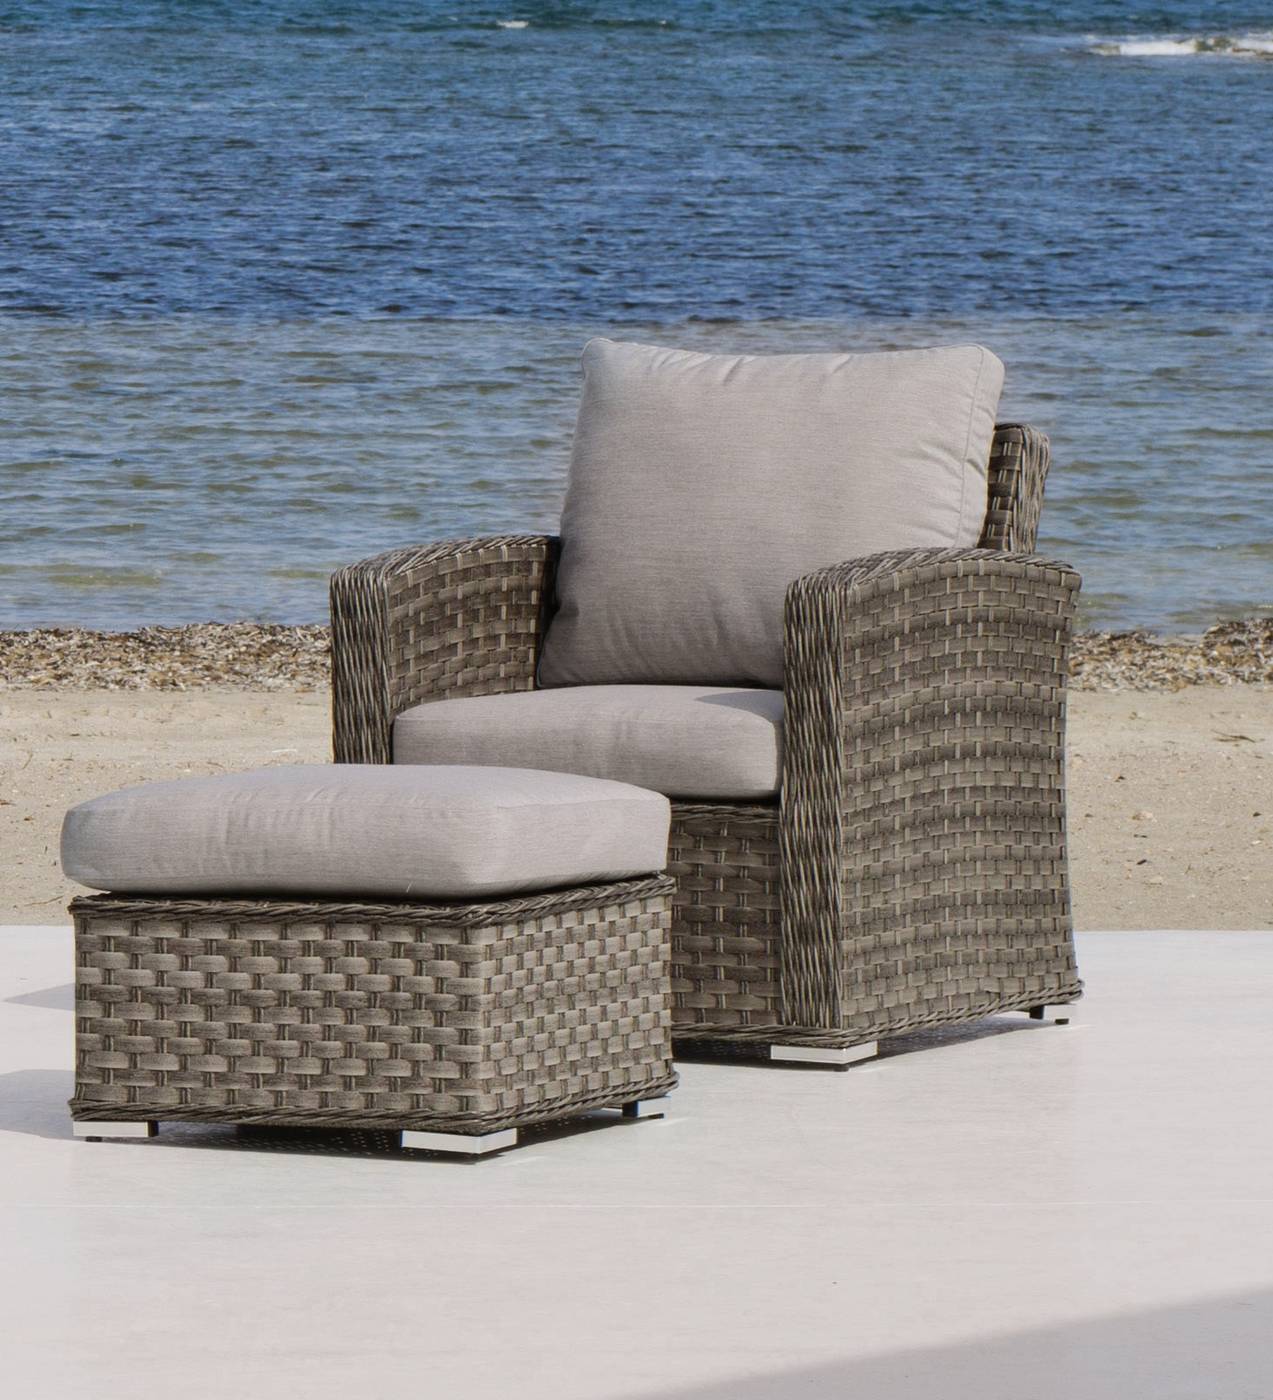 Set Médula Luxe Ocean-10 - 1 sofá de 3 plazas + 2 sillones + 1 mesa de centro + 2 reposapiés + cojines